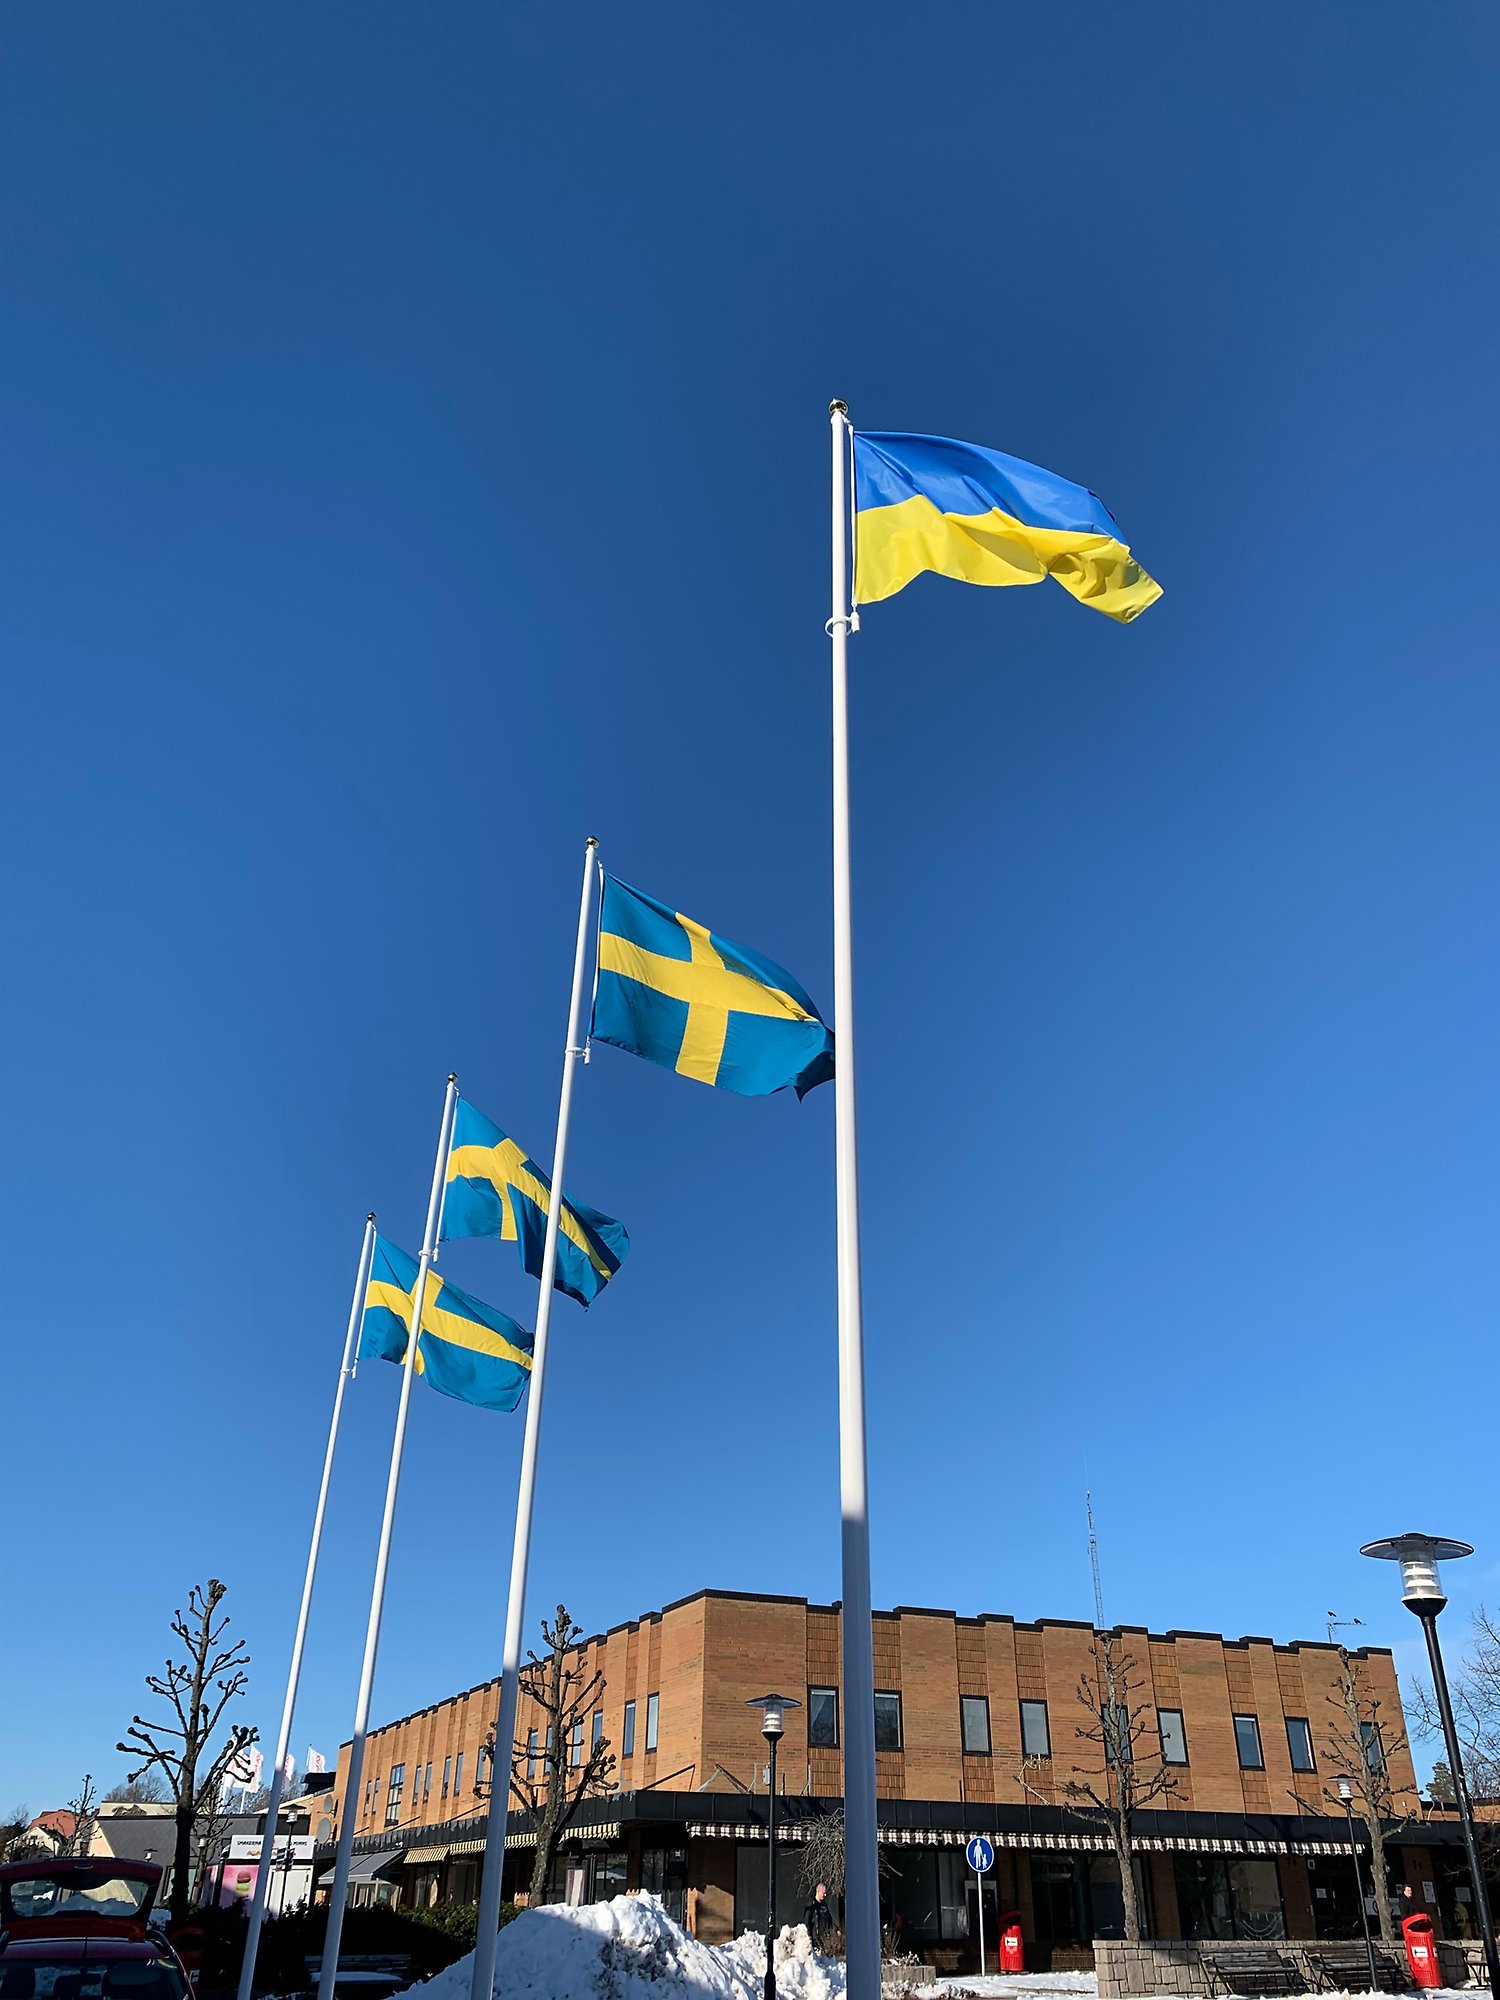 Flaggning på Hammartorget med tre svenska flaggor och en ukrainsk flagga